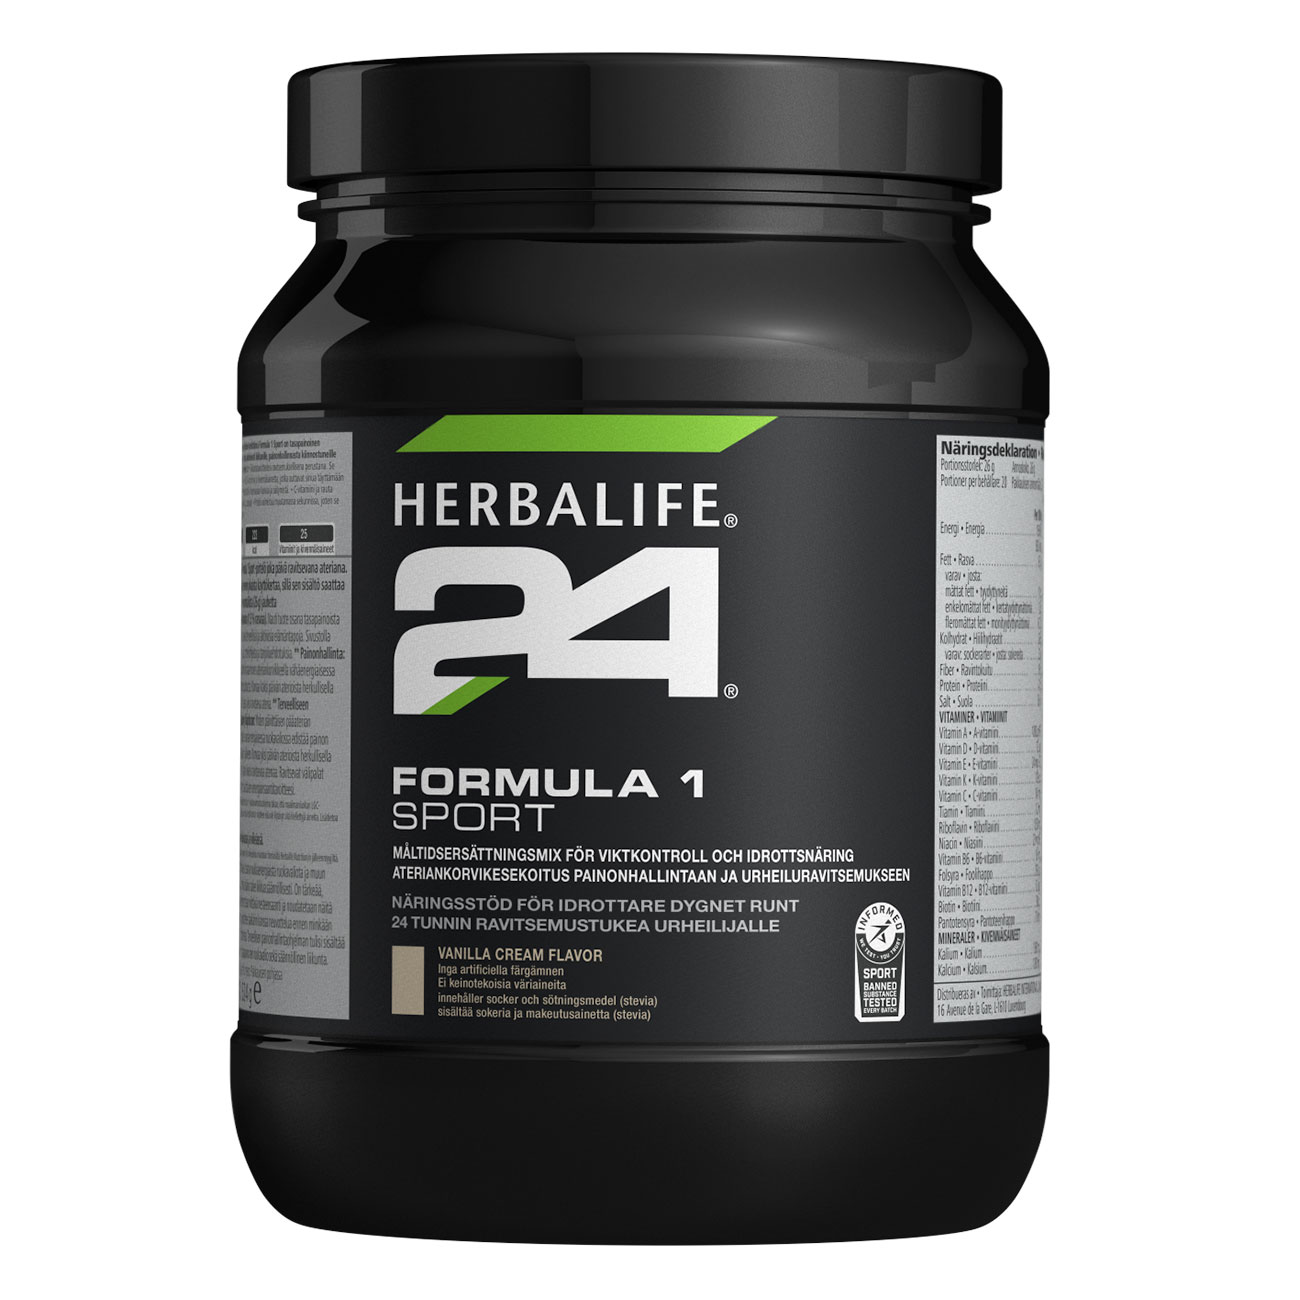 Herbalife24® Formula 1 Sport proteiinijuoma Vanilla Cream tuotekuva